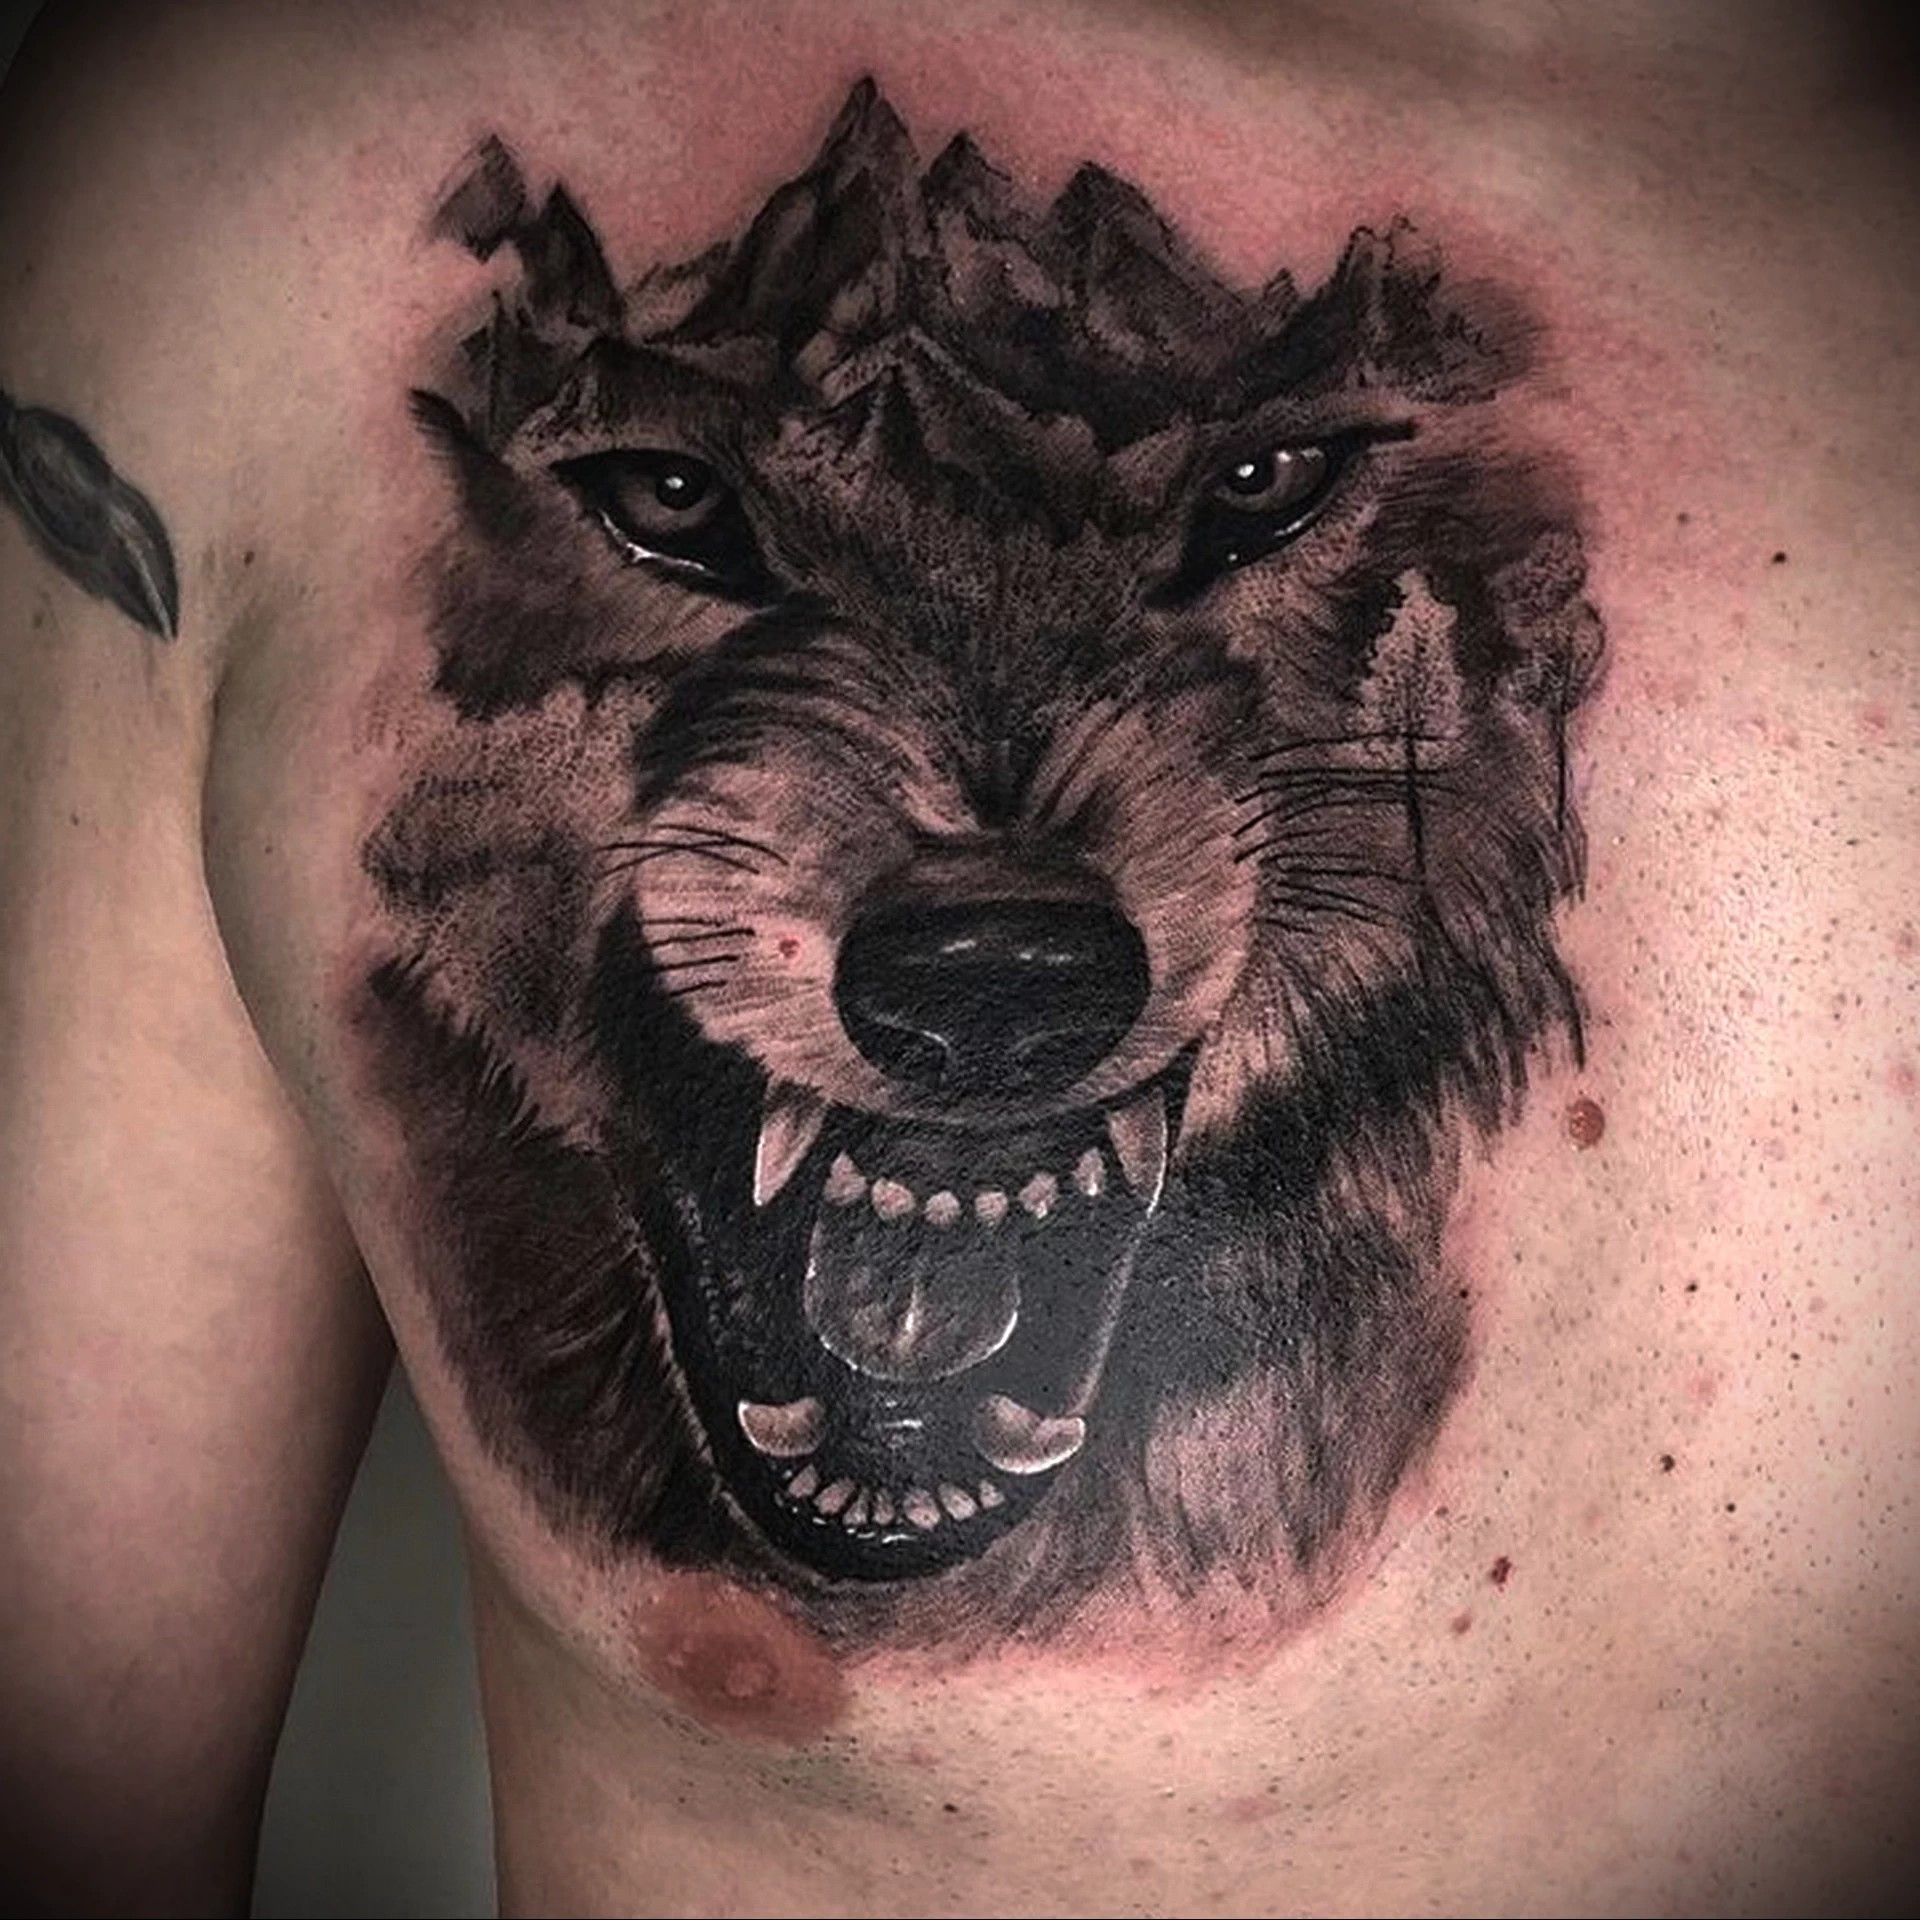 Татуировка волка на руке мужчины - значение и символика